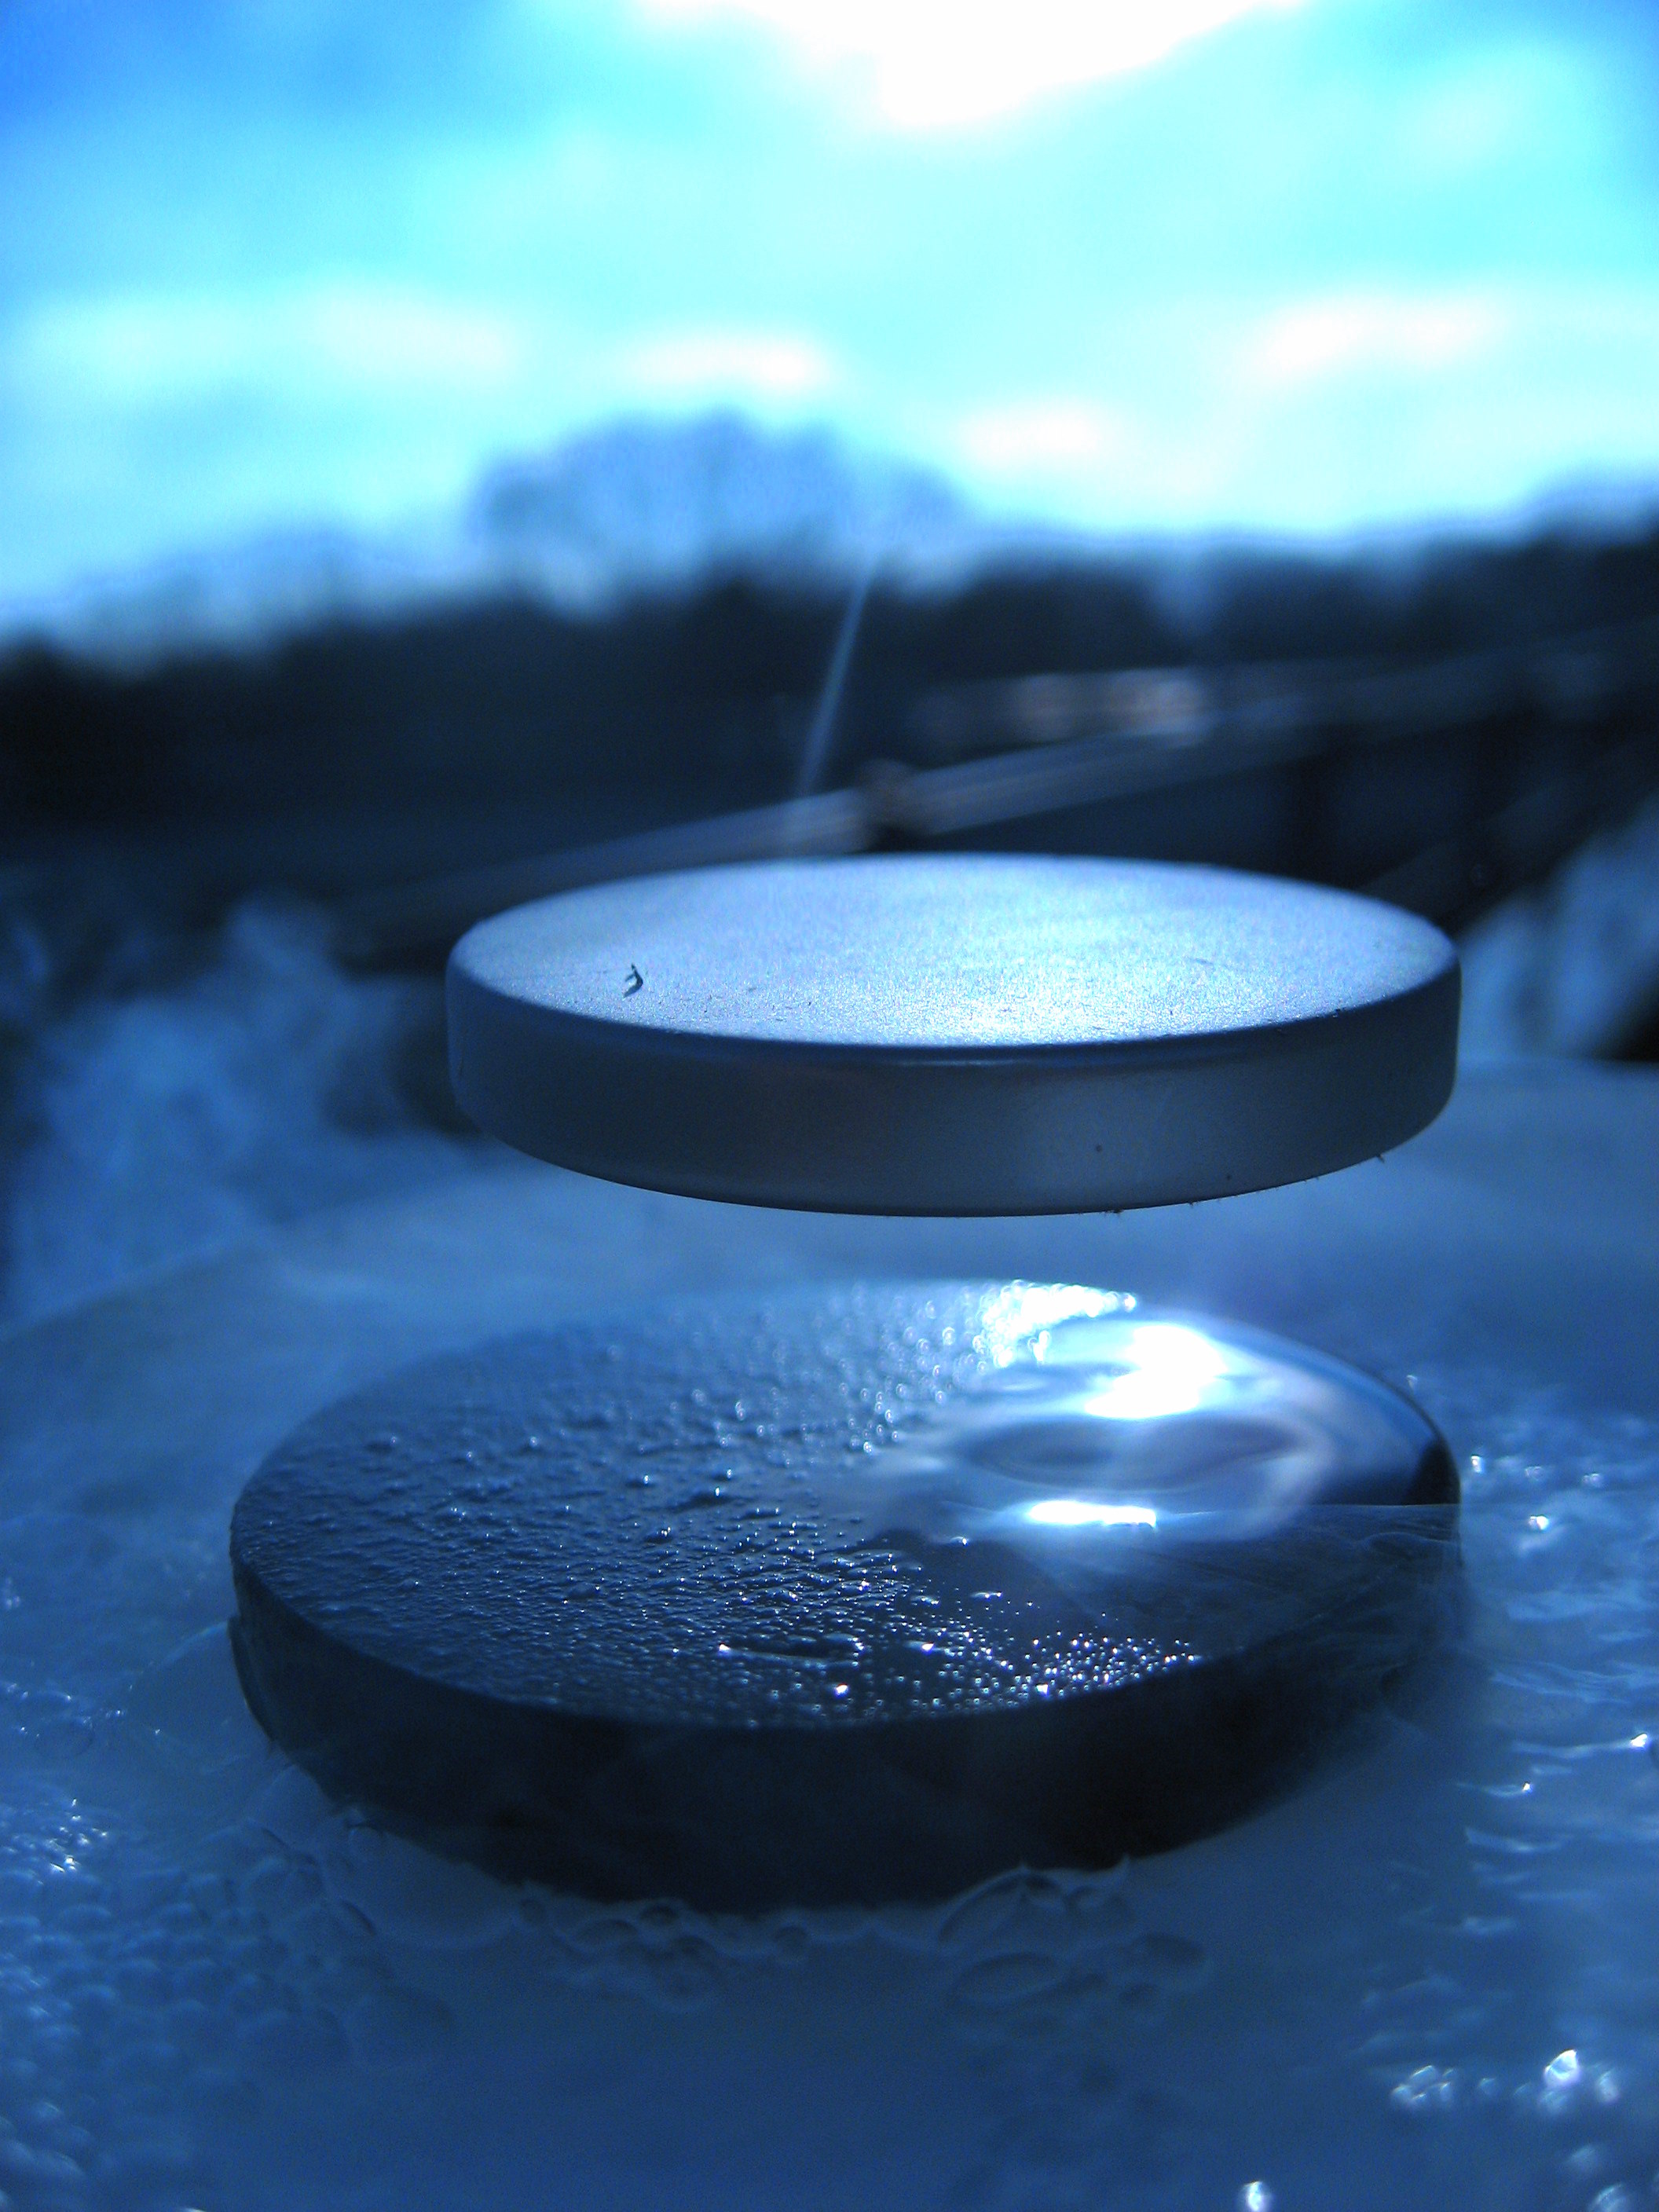 Левітація магніту над надпровідником купратного типу, охолодженим до мінус 196 градусів Цельсію. Julien Bobroff / Wikimedia Commons